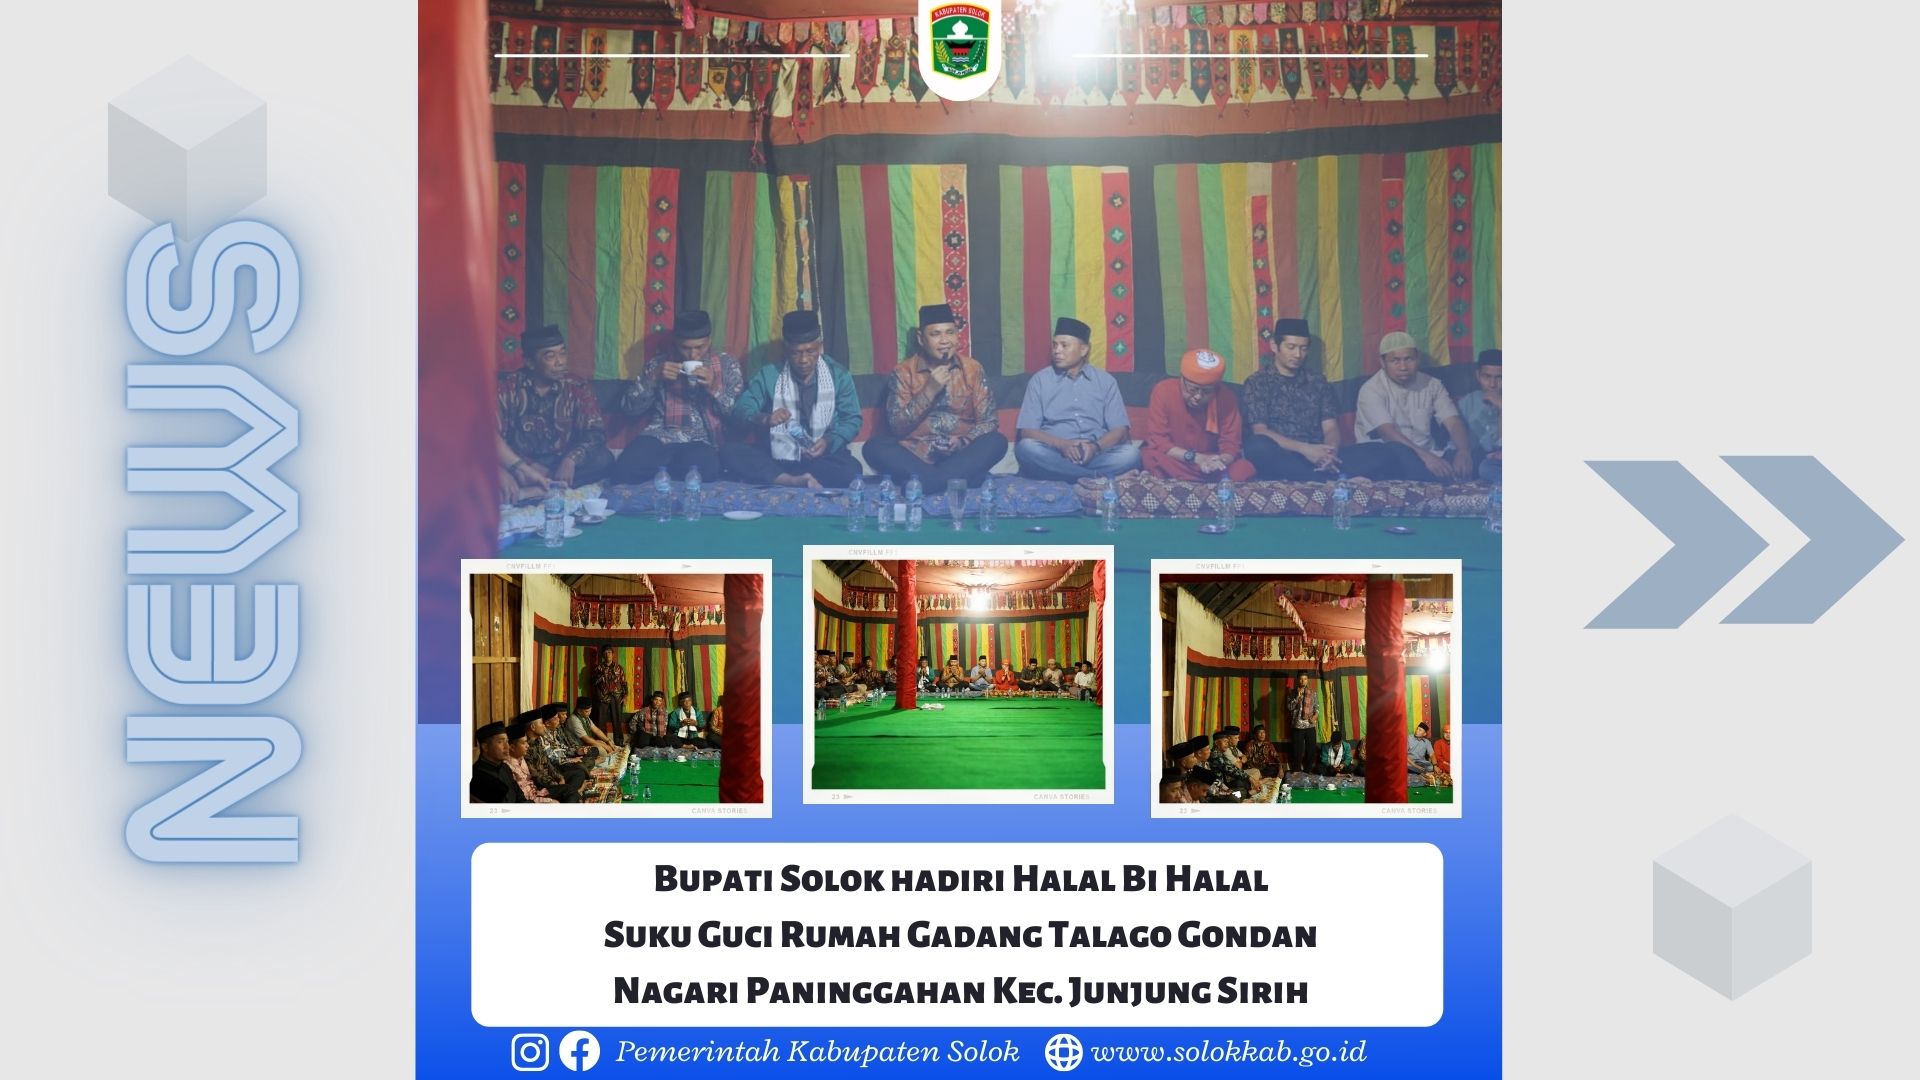 Bupati Solok hadiri Halal Bi Halal Suku Guci Rumah Gadang Talago Gondan Nagari Paninggahan Kec. Junjung Sirih